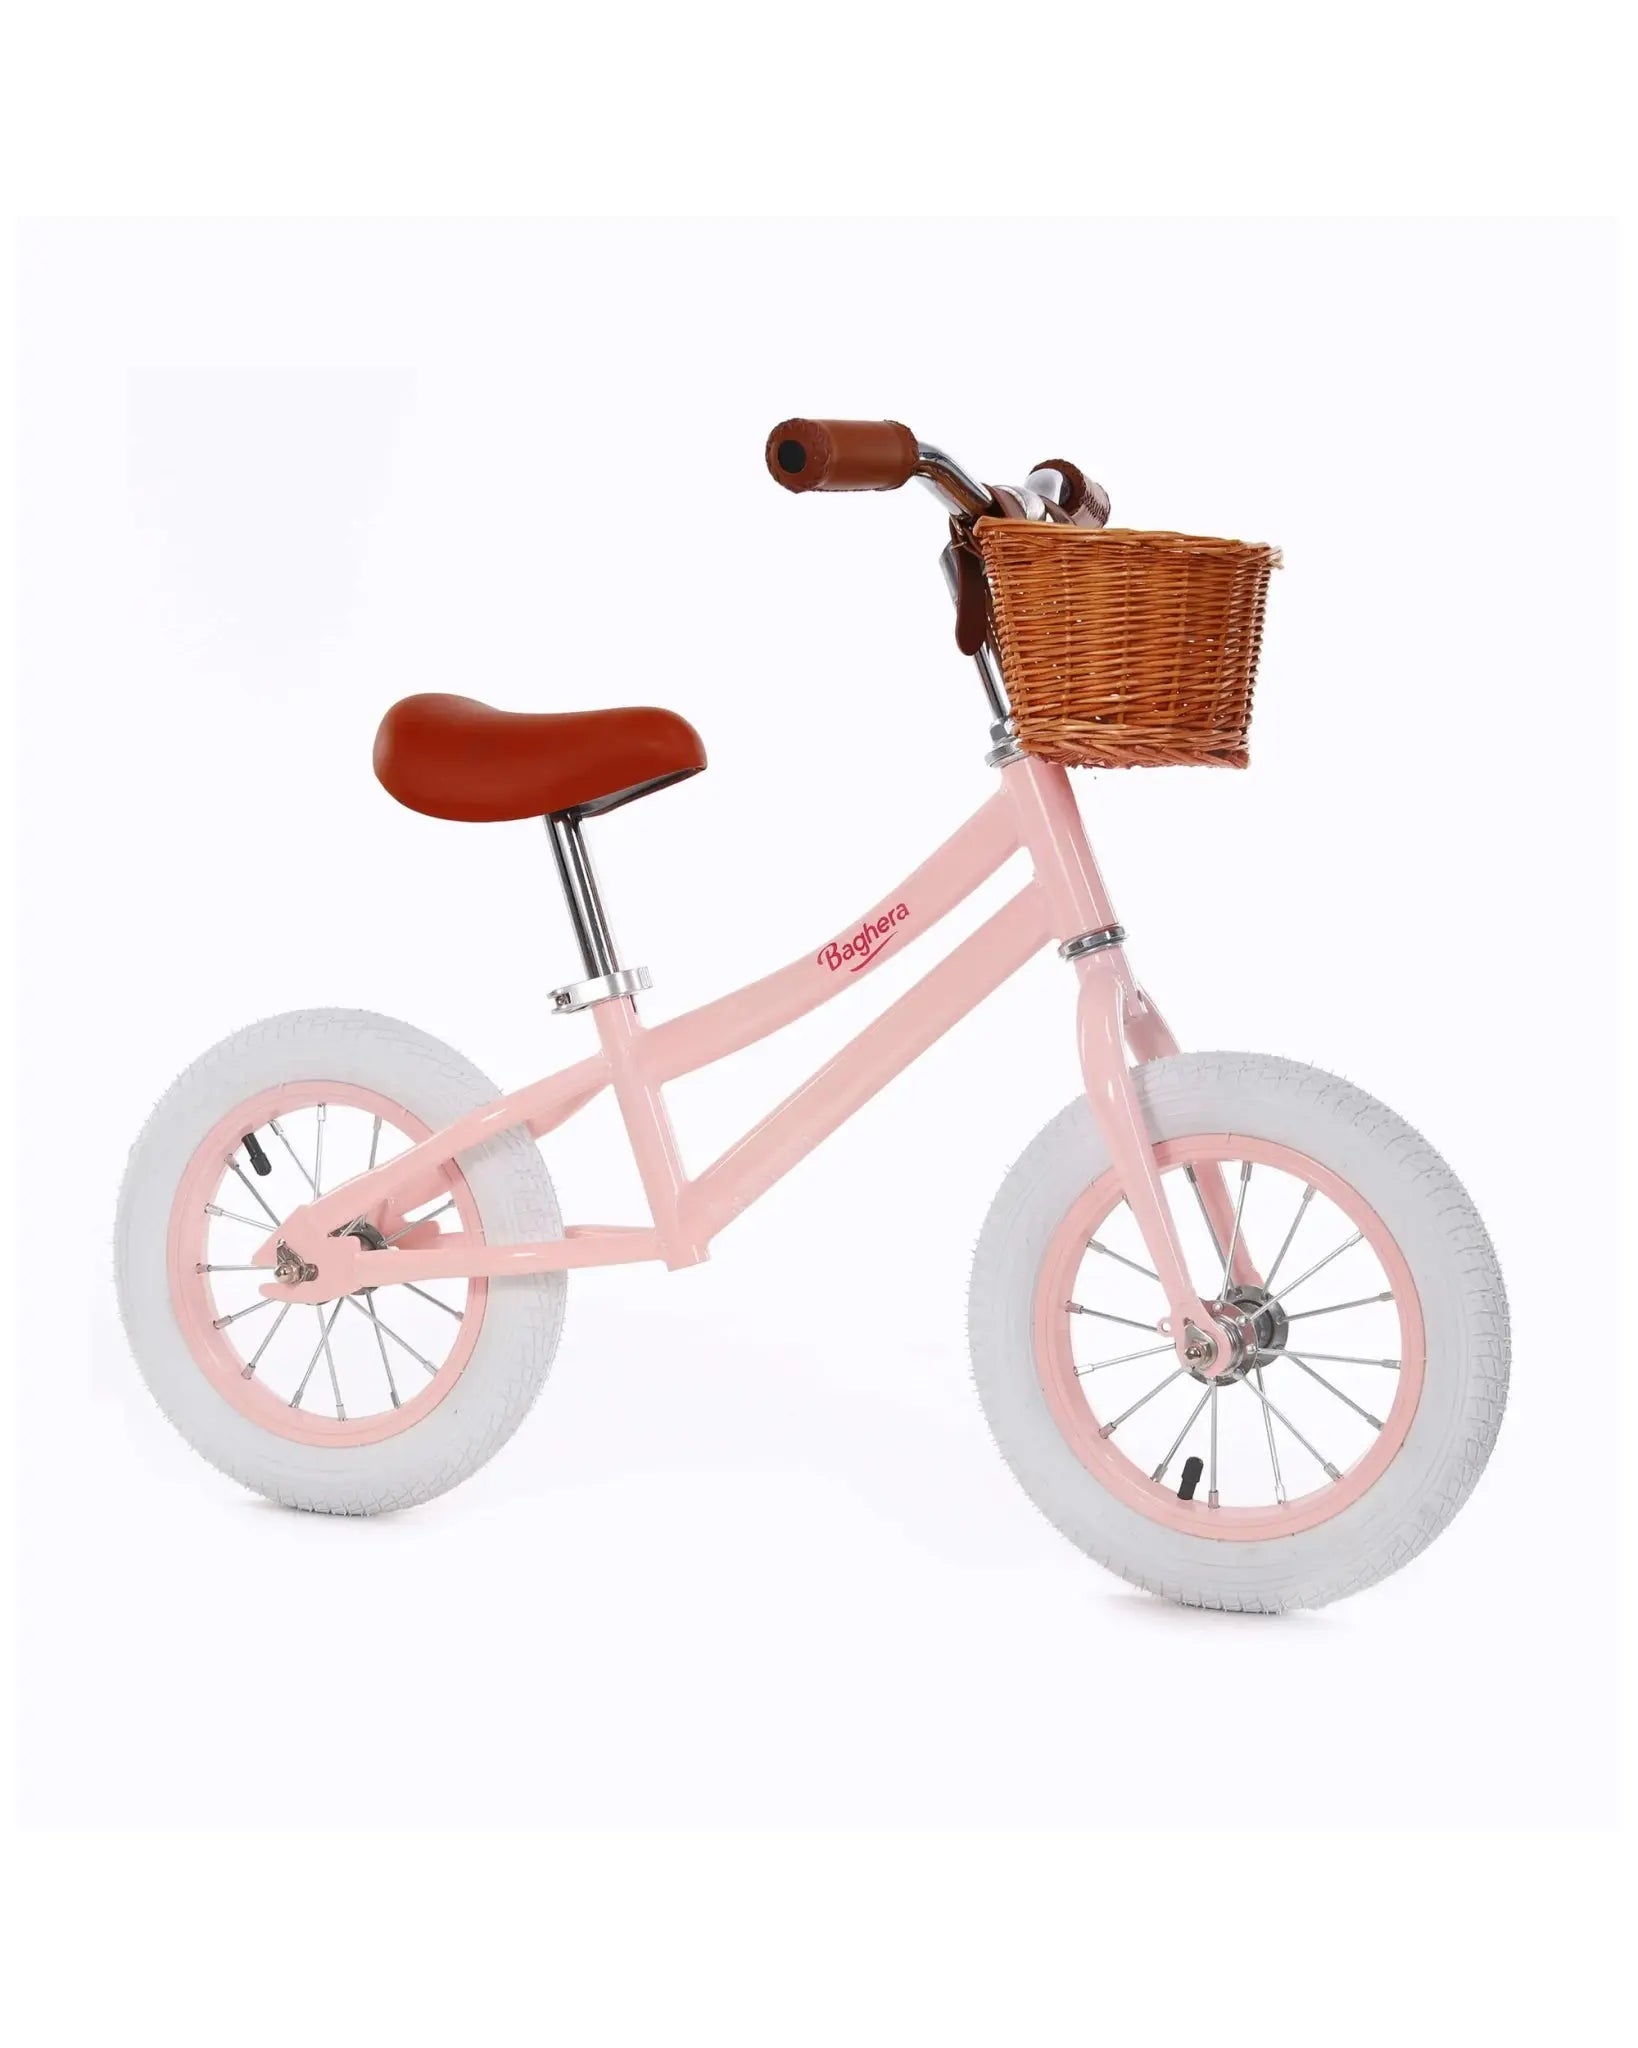 Pedal-free Bicycle Balance Bike, Retro Design, Charm-filled Ride, Kids Bike, Toddler Bike, Outdoor Toy  Baghera Pink  